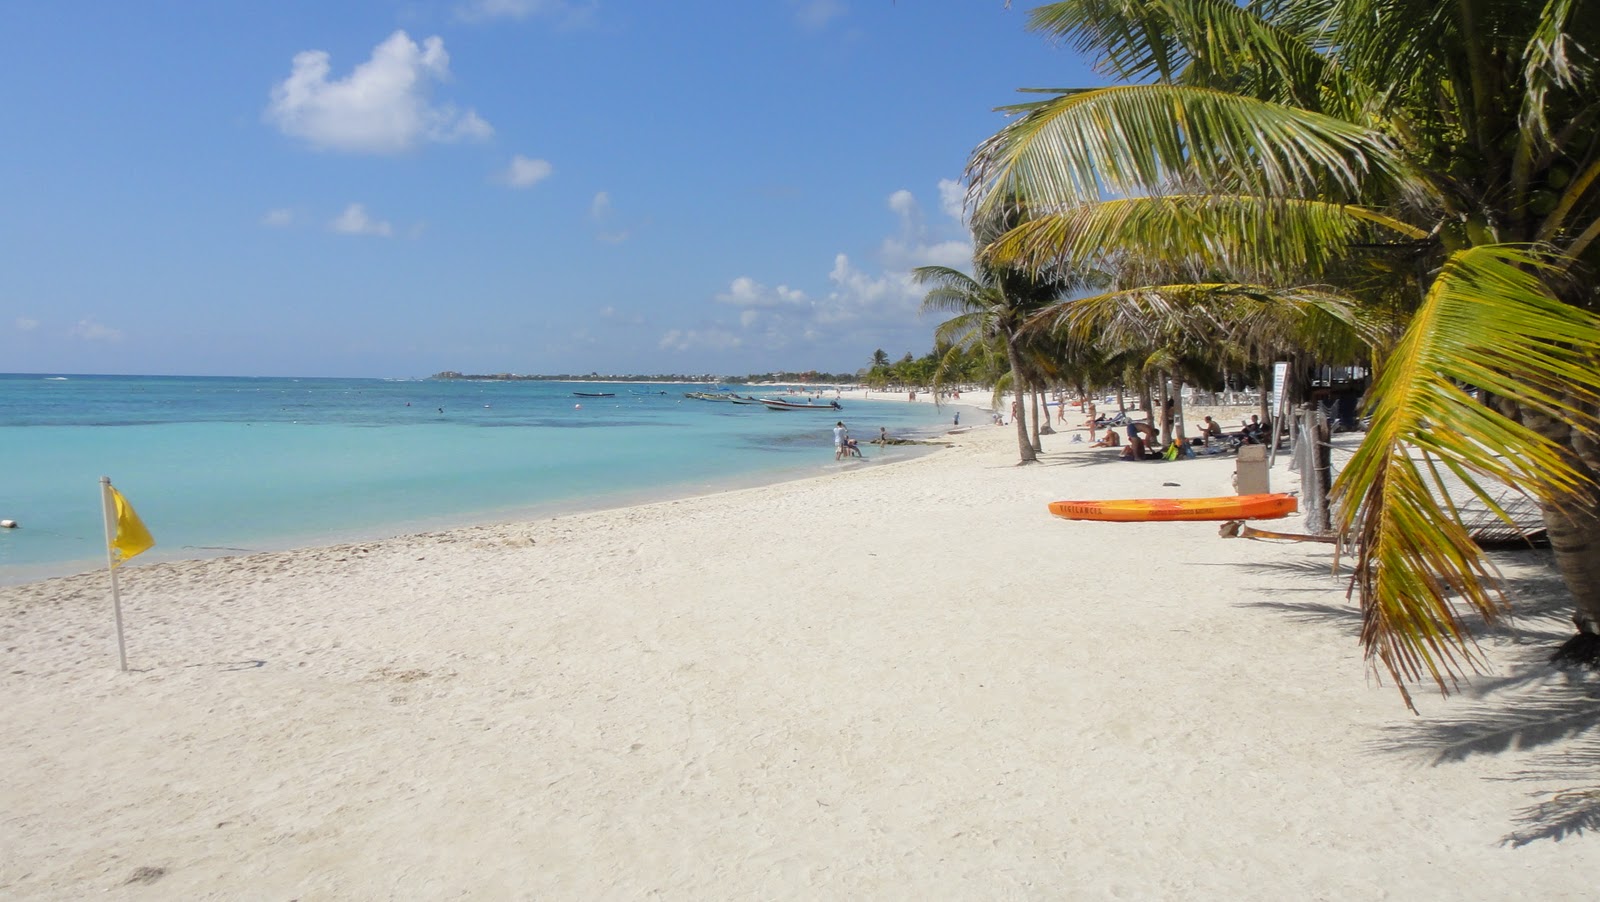 Phoebettmh Travel: (Mexico) - Sun, sand and the Caribbean sea on the